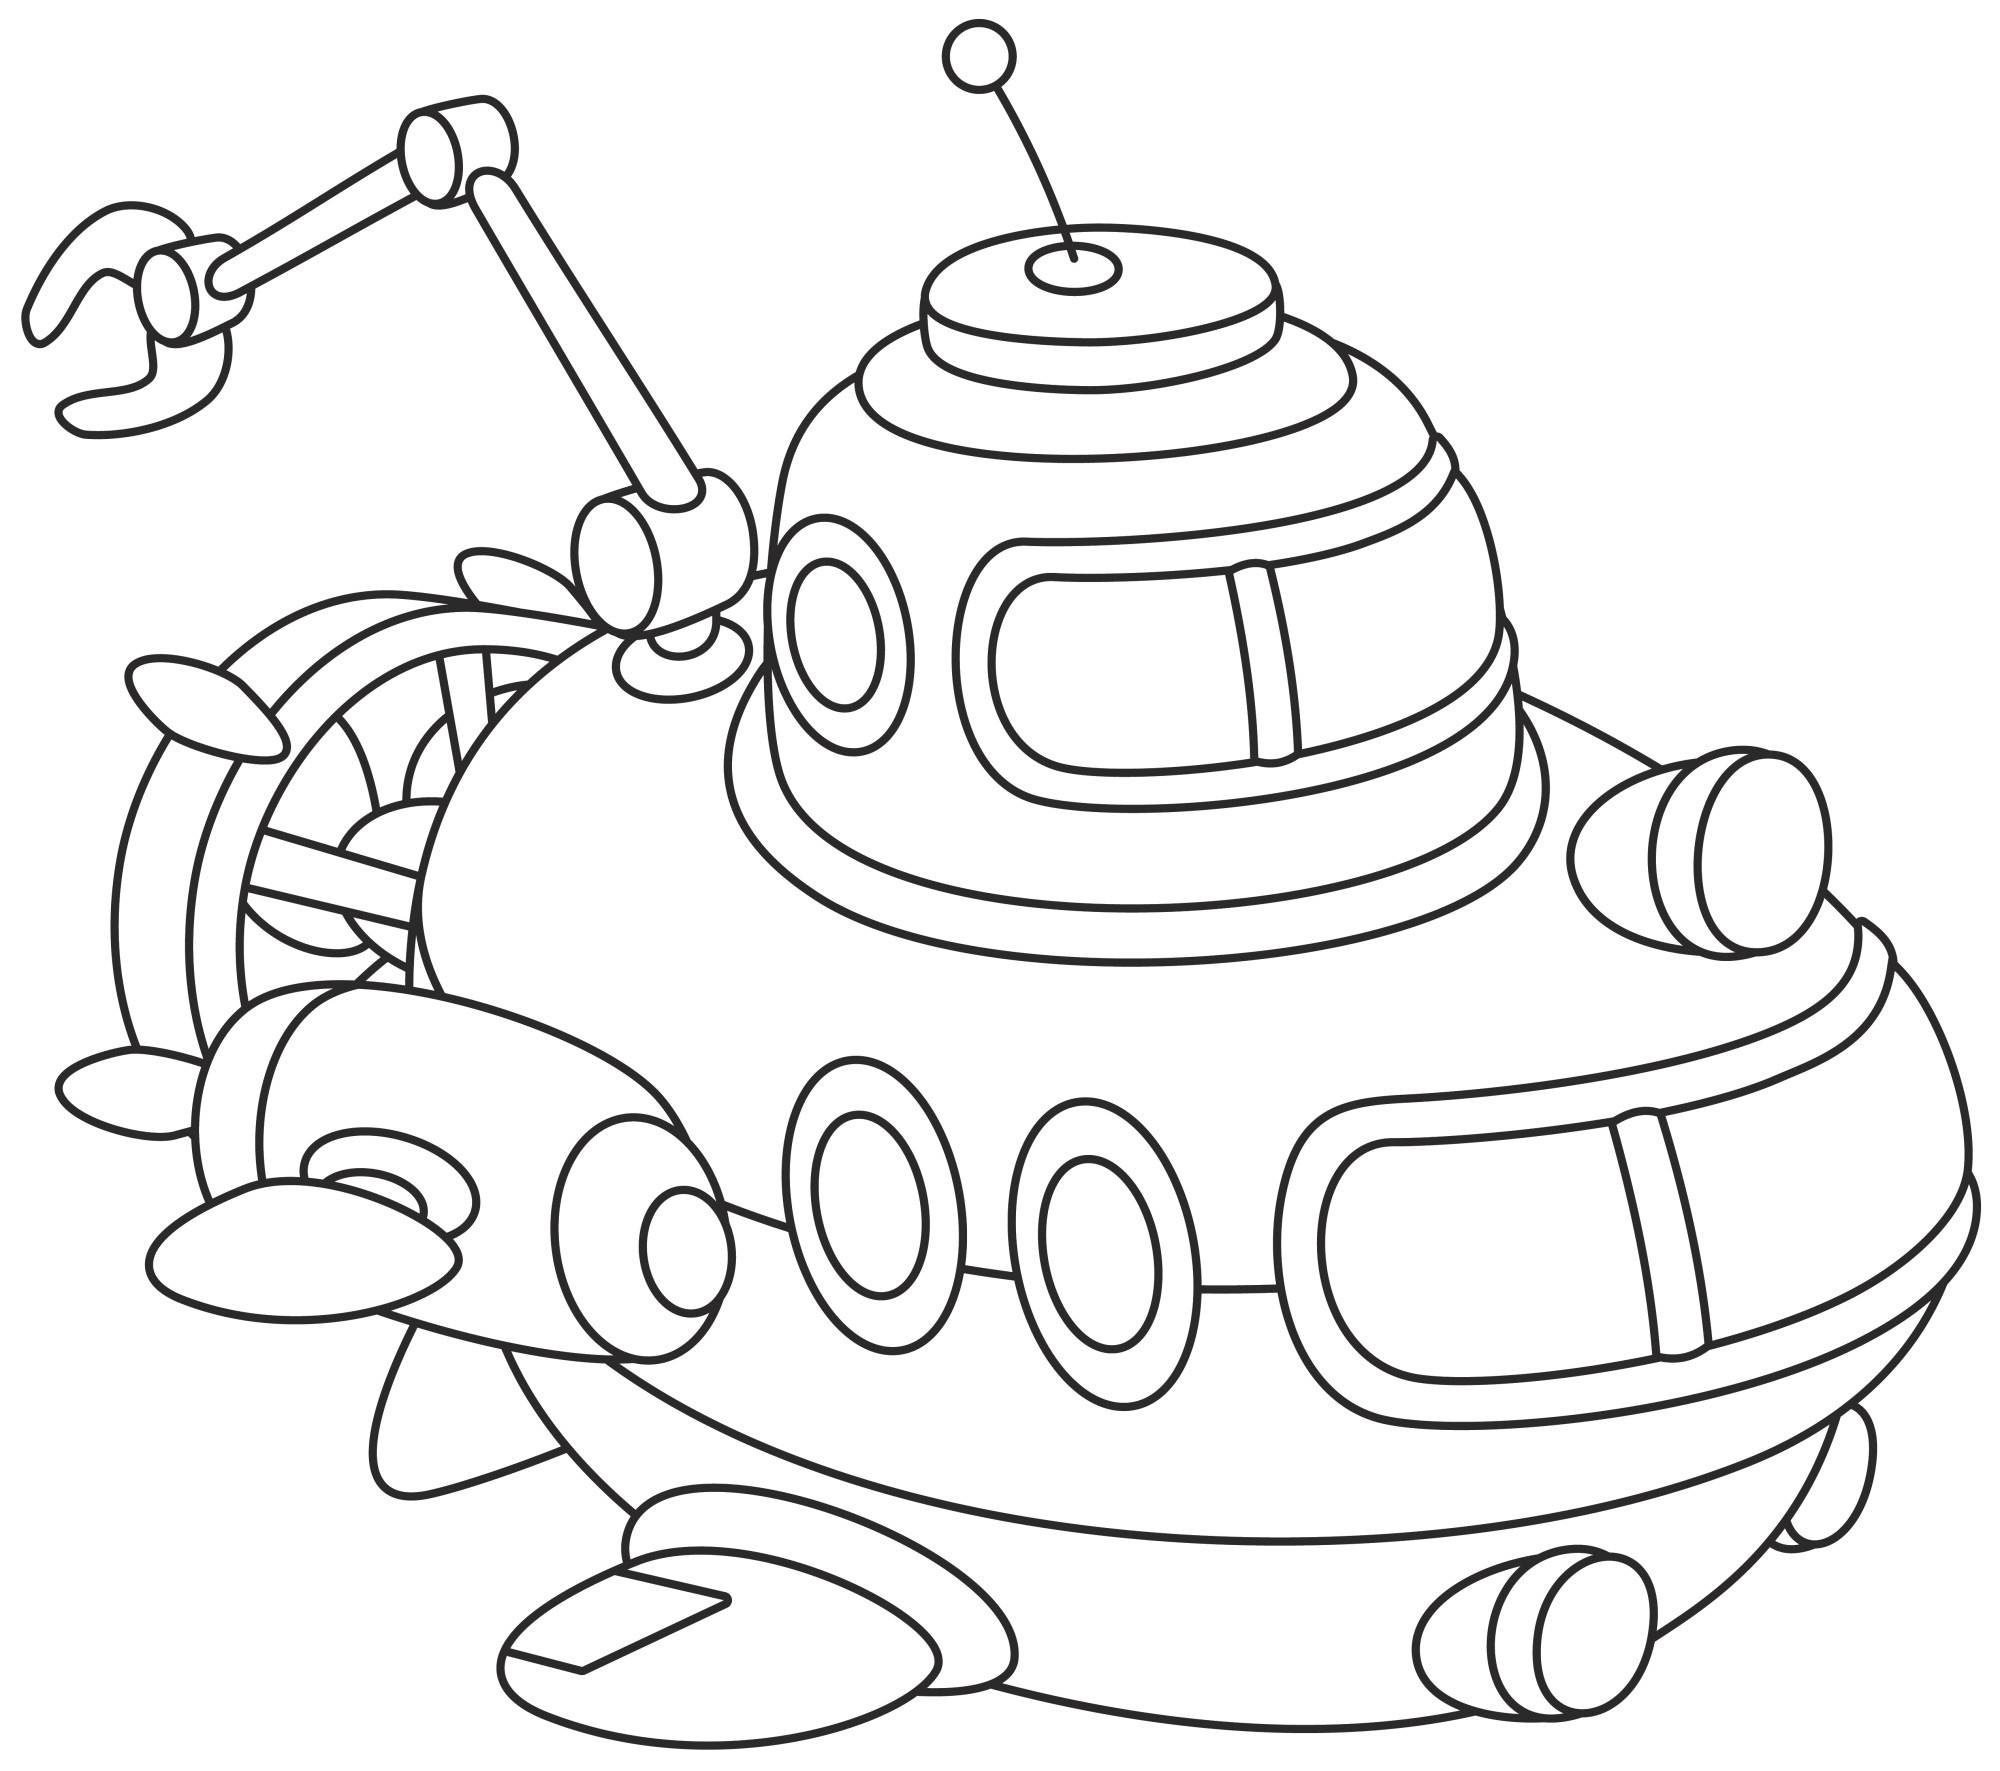 Раскраска для детей: игрушка подводный батискаф Поп-ит